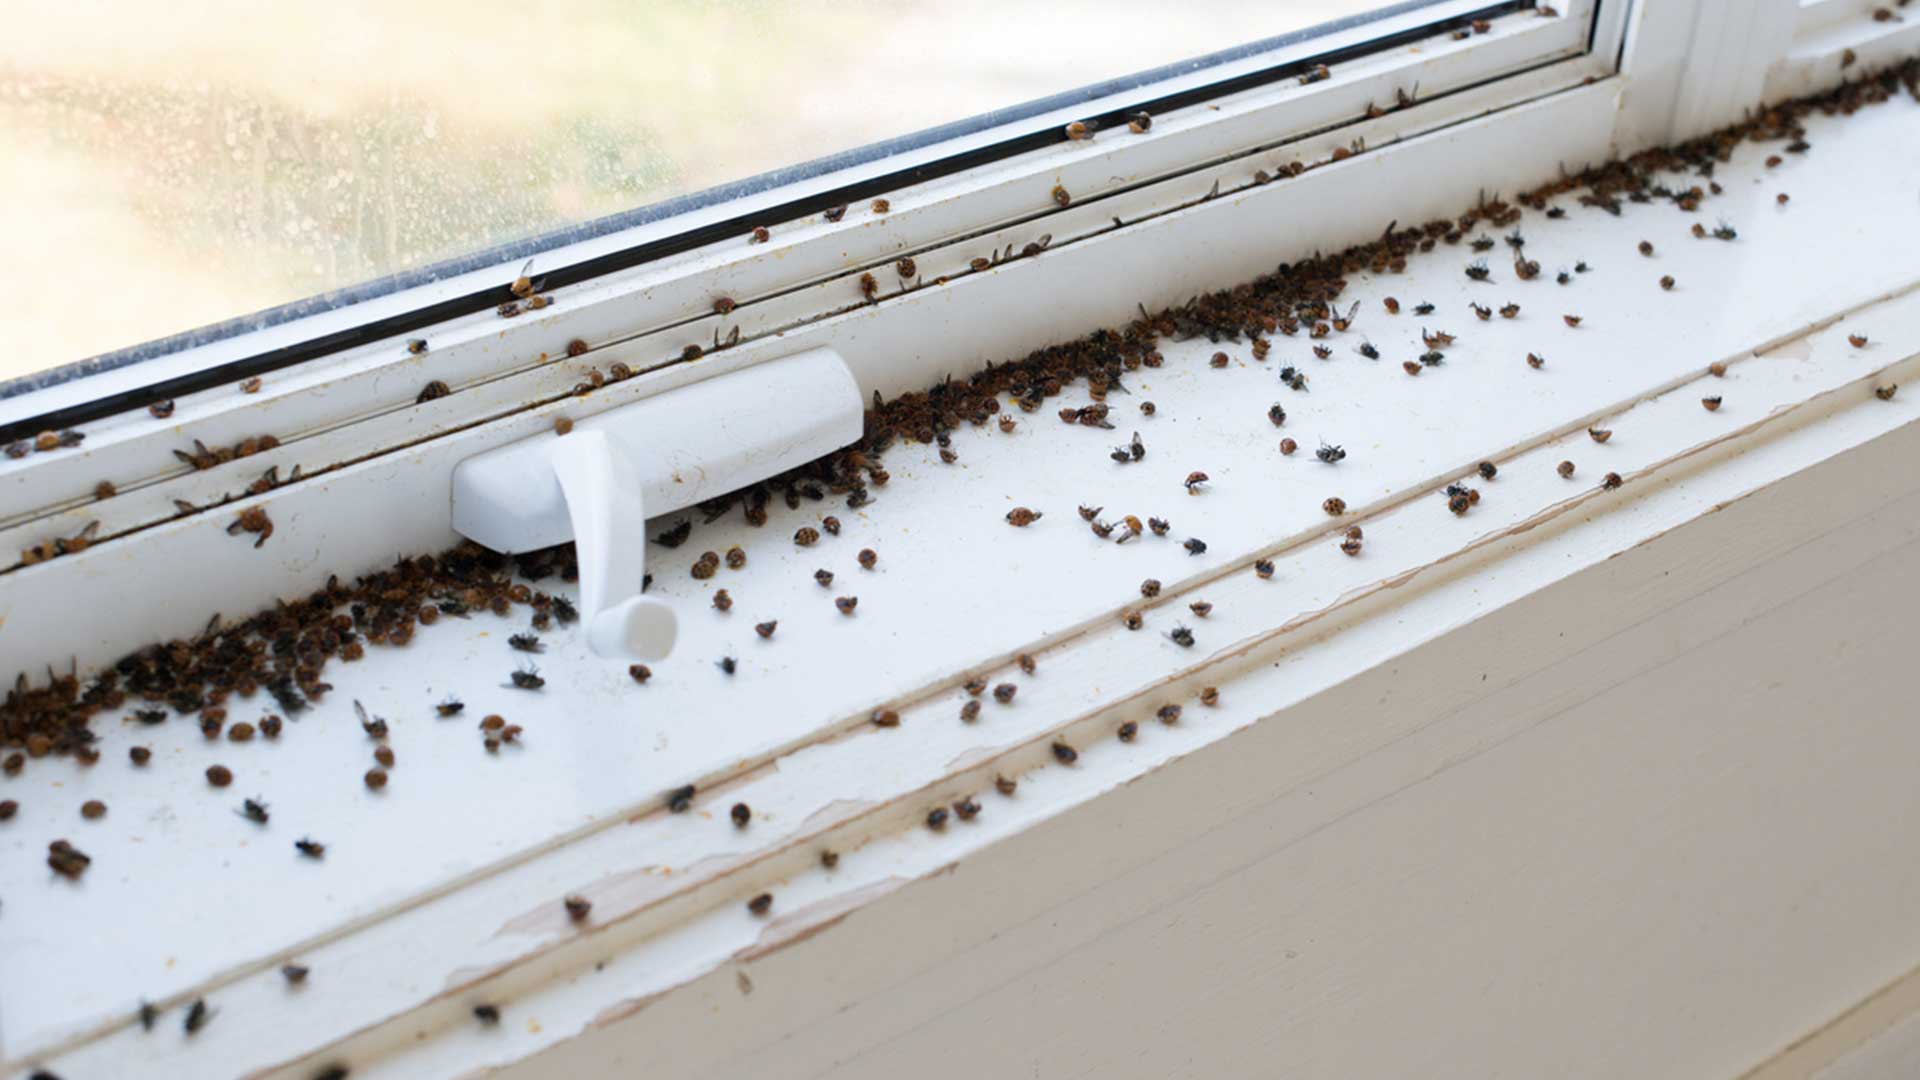 Ladybug infestation on window ledge